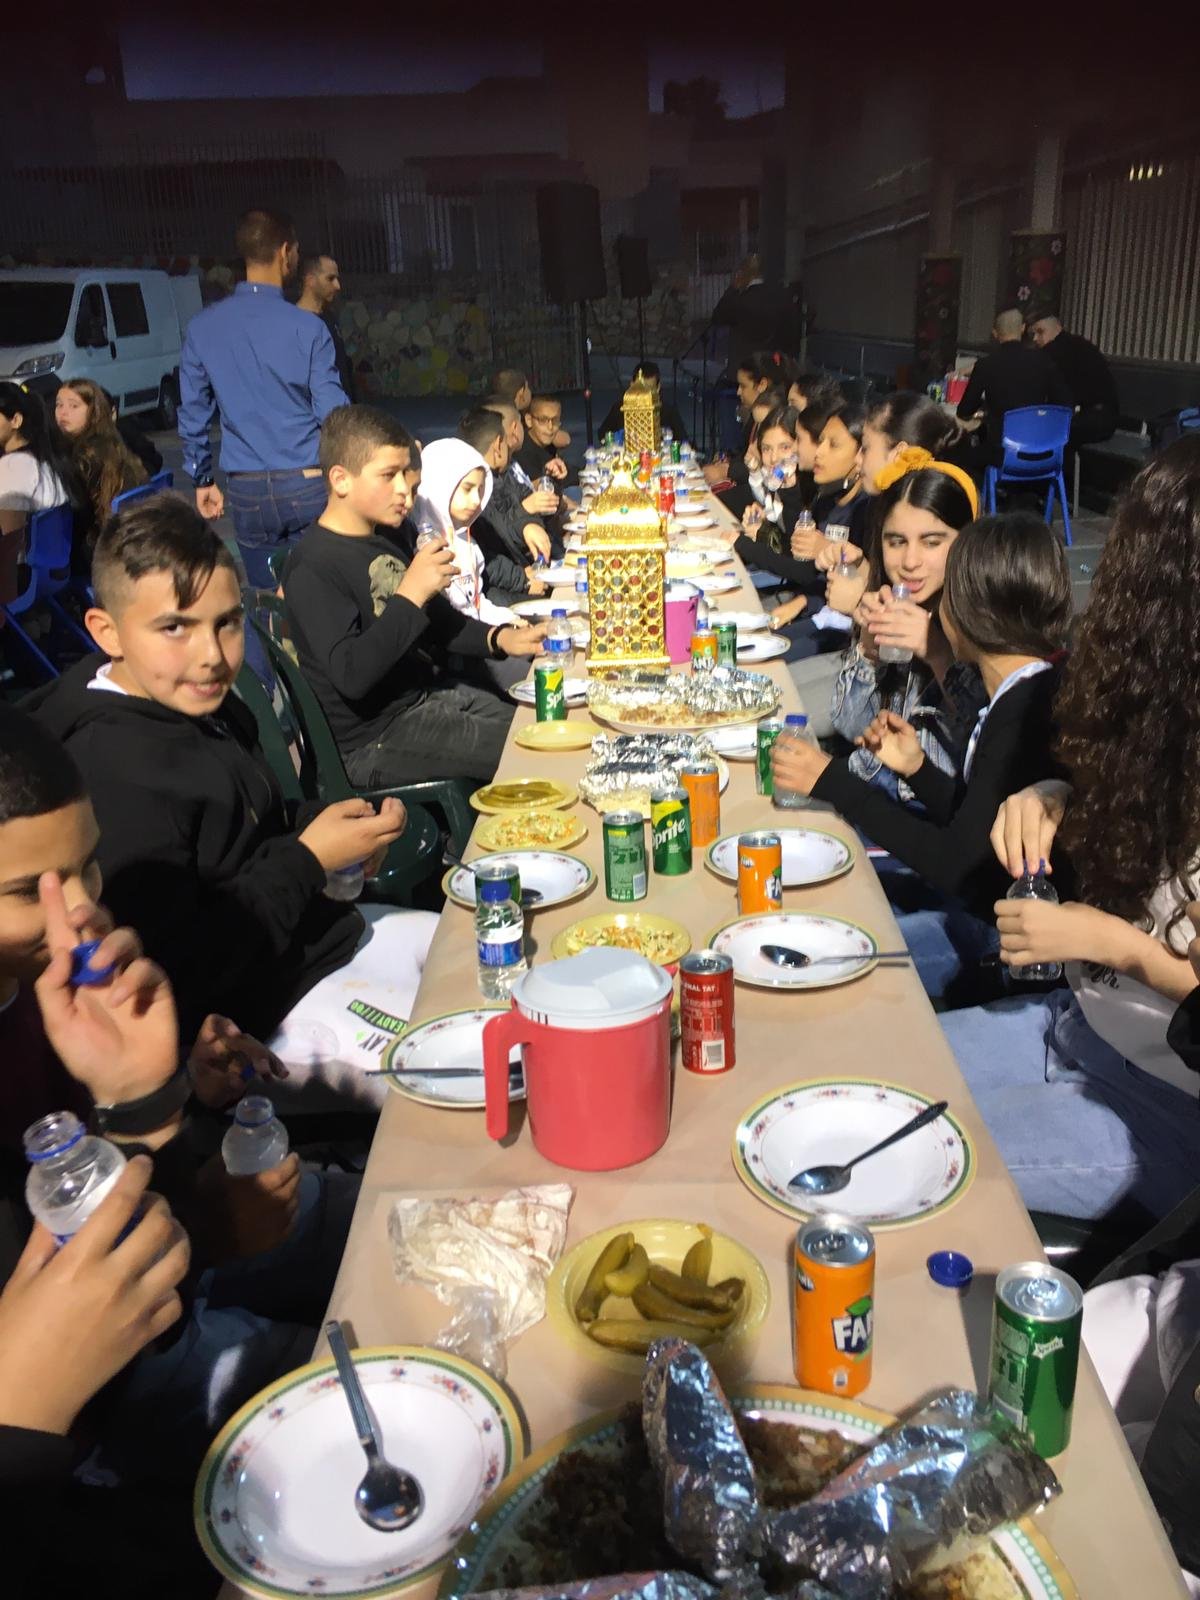 أمسية رمضانية تُعيد النكهة لطقوس وروحانيات الشهر الفضيل في المدرسة الجماهيريّة بئر الأمير-الناصرة-13